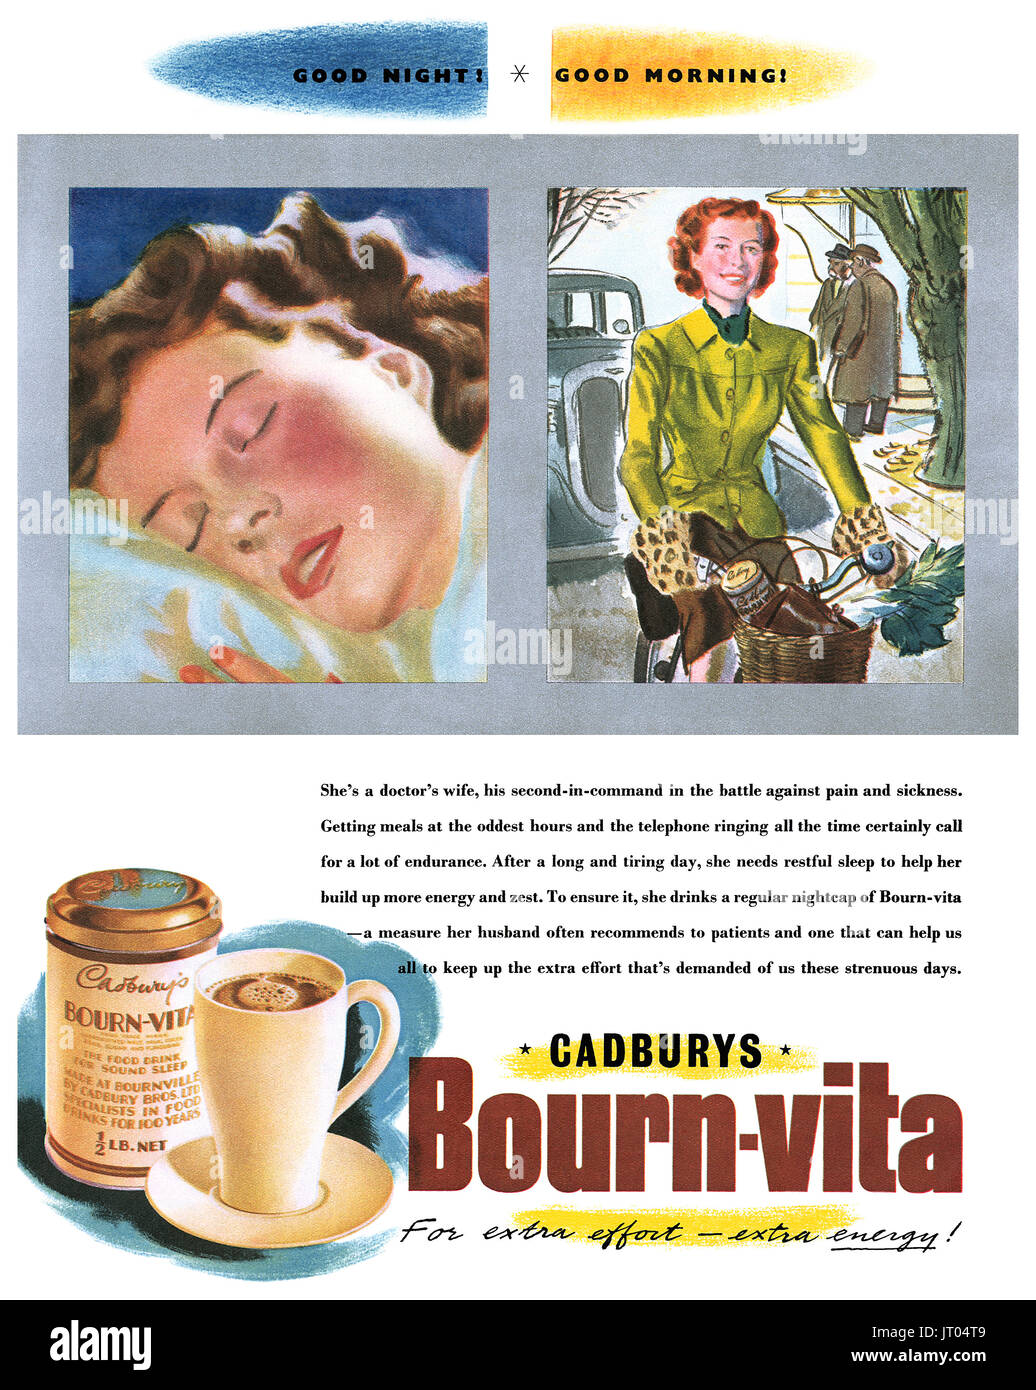 1948 British pubblicità per Cadbury's Bourn-Vita (ora chiamato Bournvita) il cioccolato al malto bere. Foto Stock